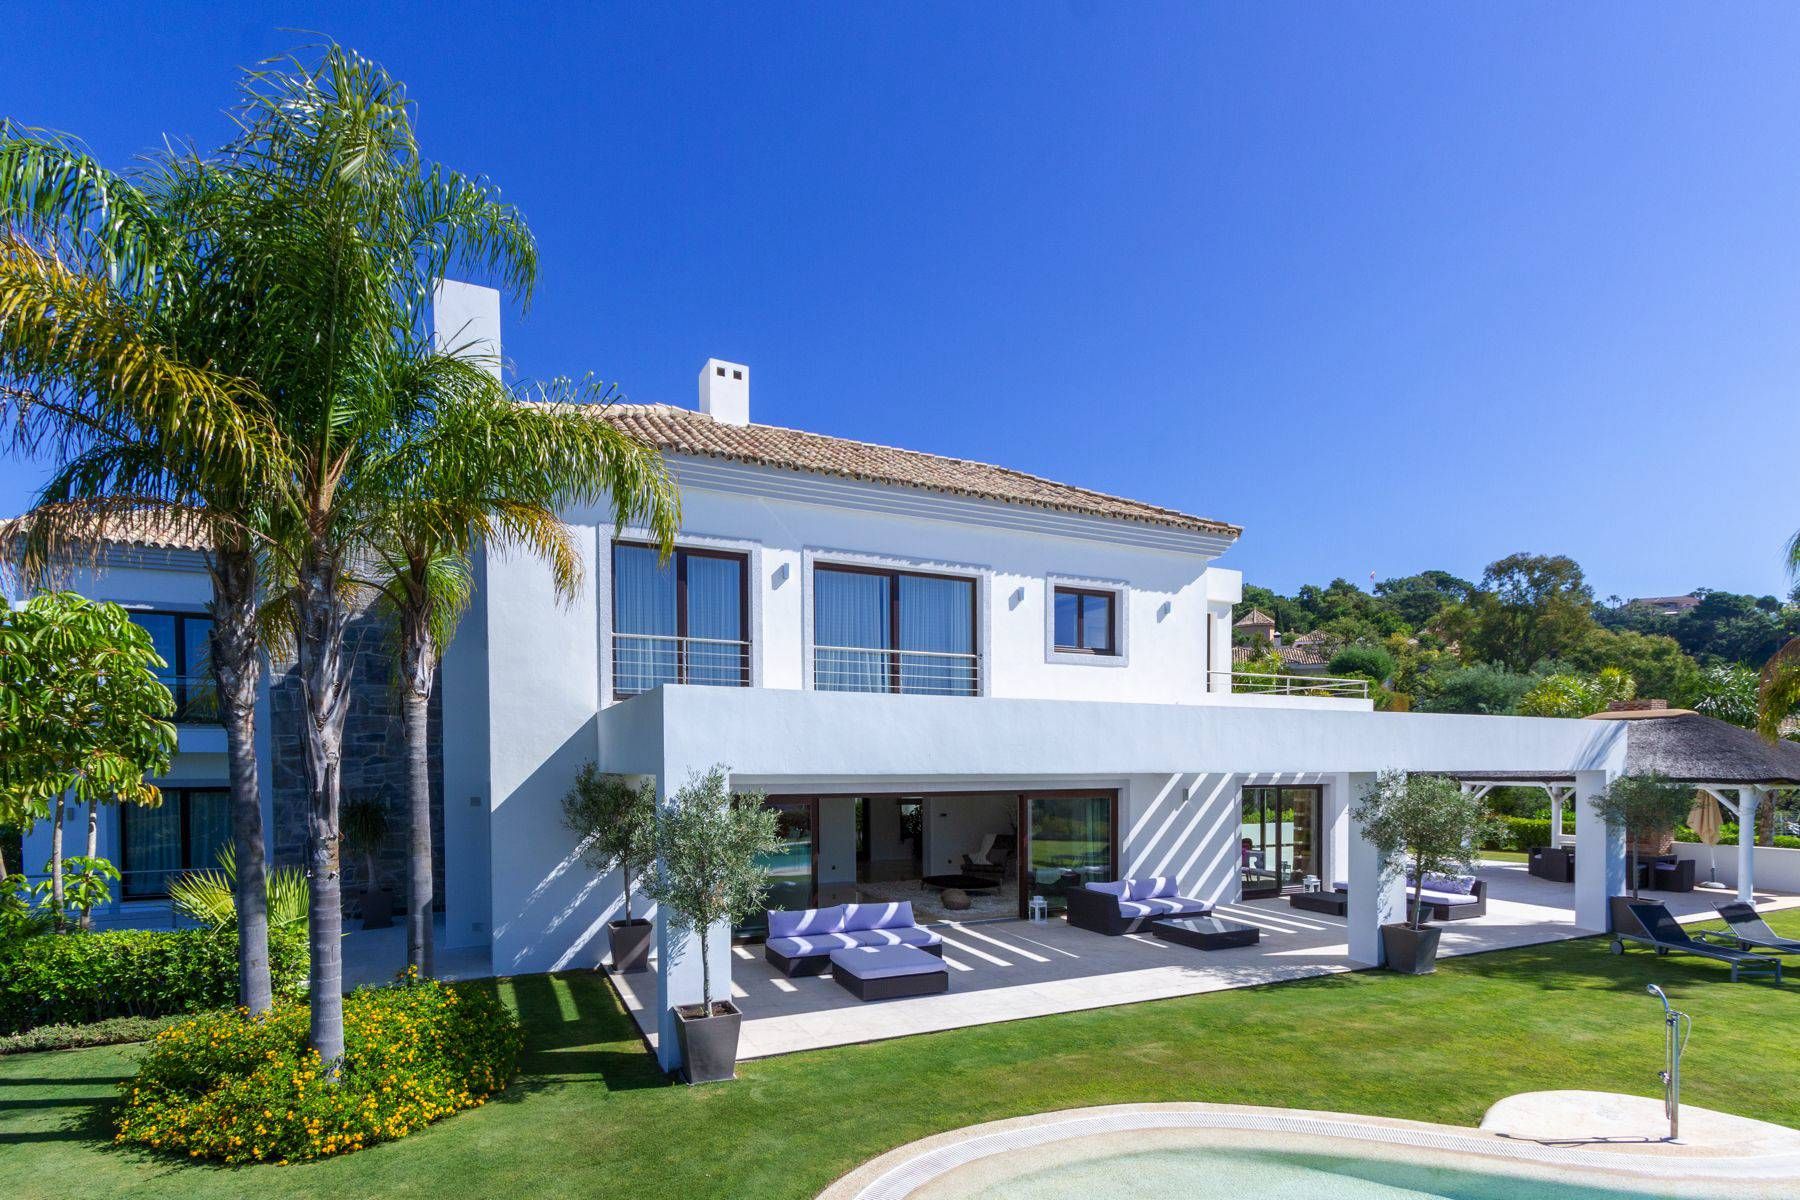 Contemporary villa with stunning open views in La Zagaleta, Benahavis | Engel & Völkers Marbella